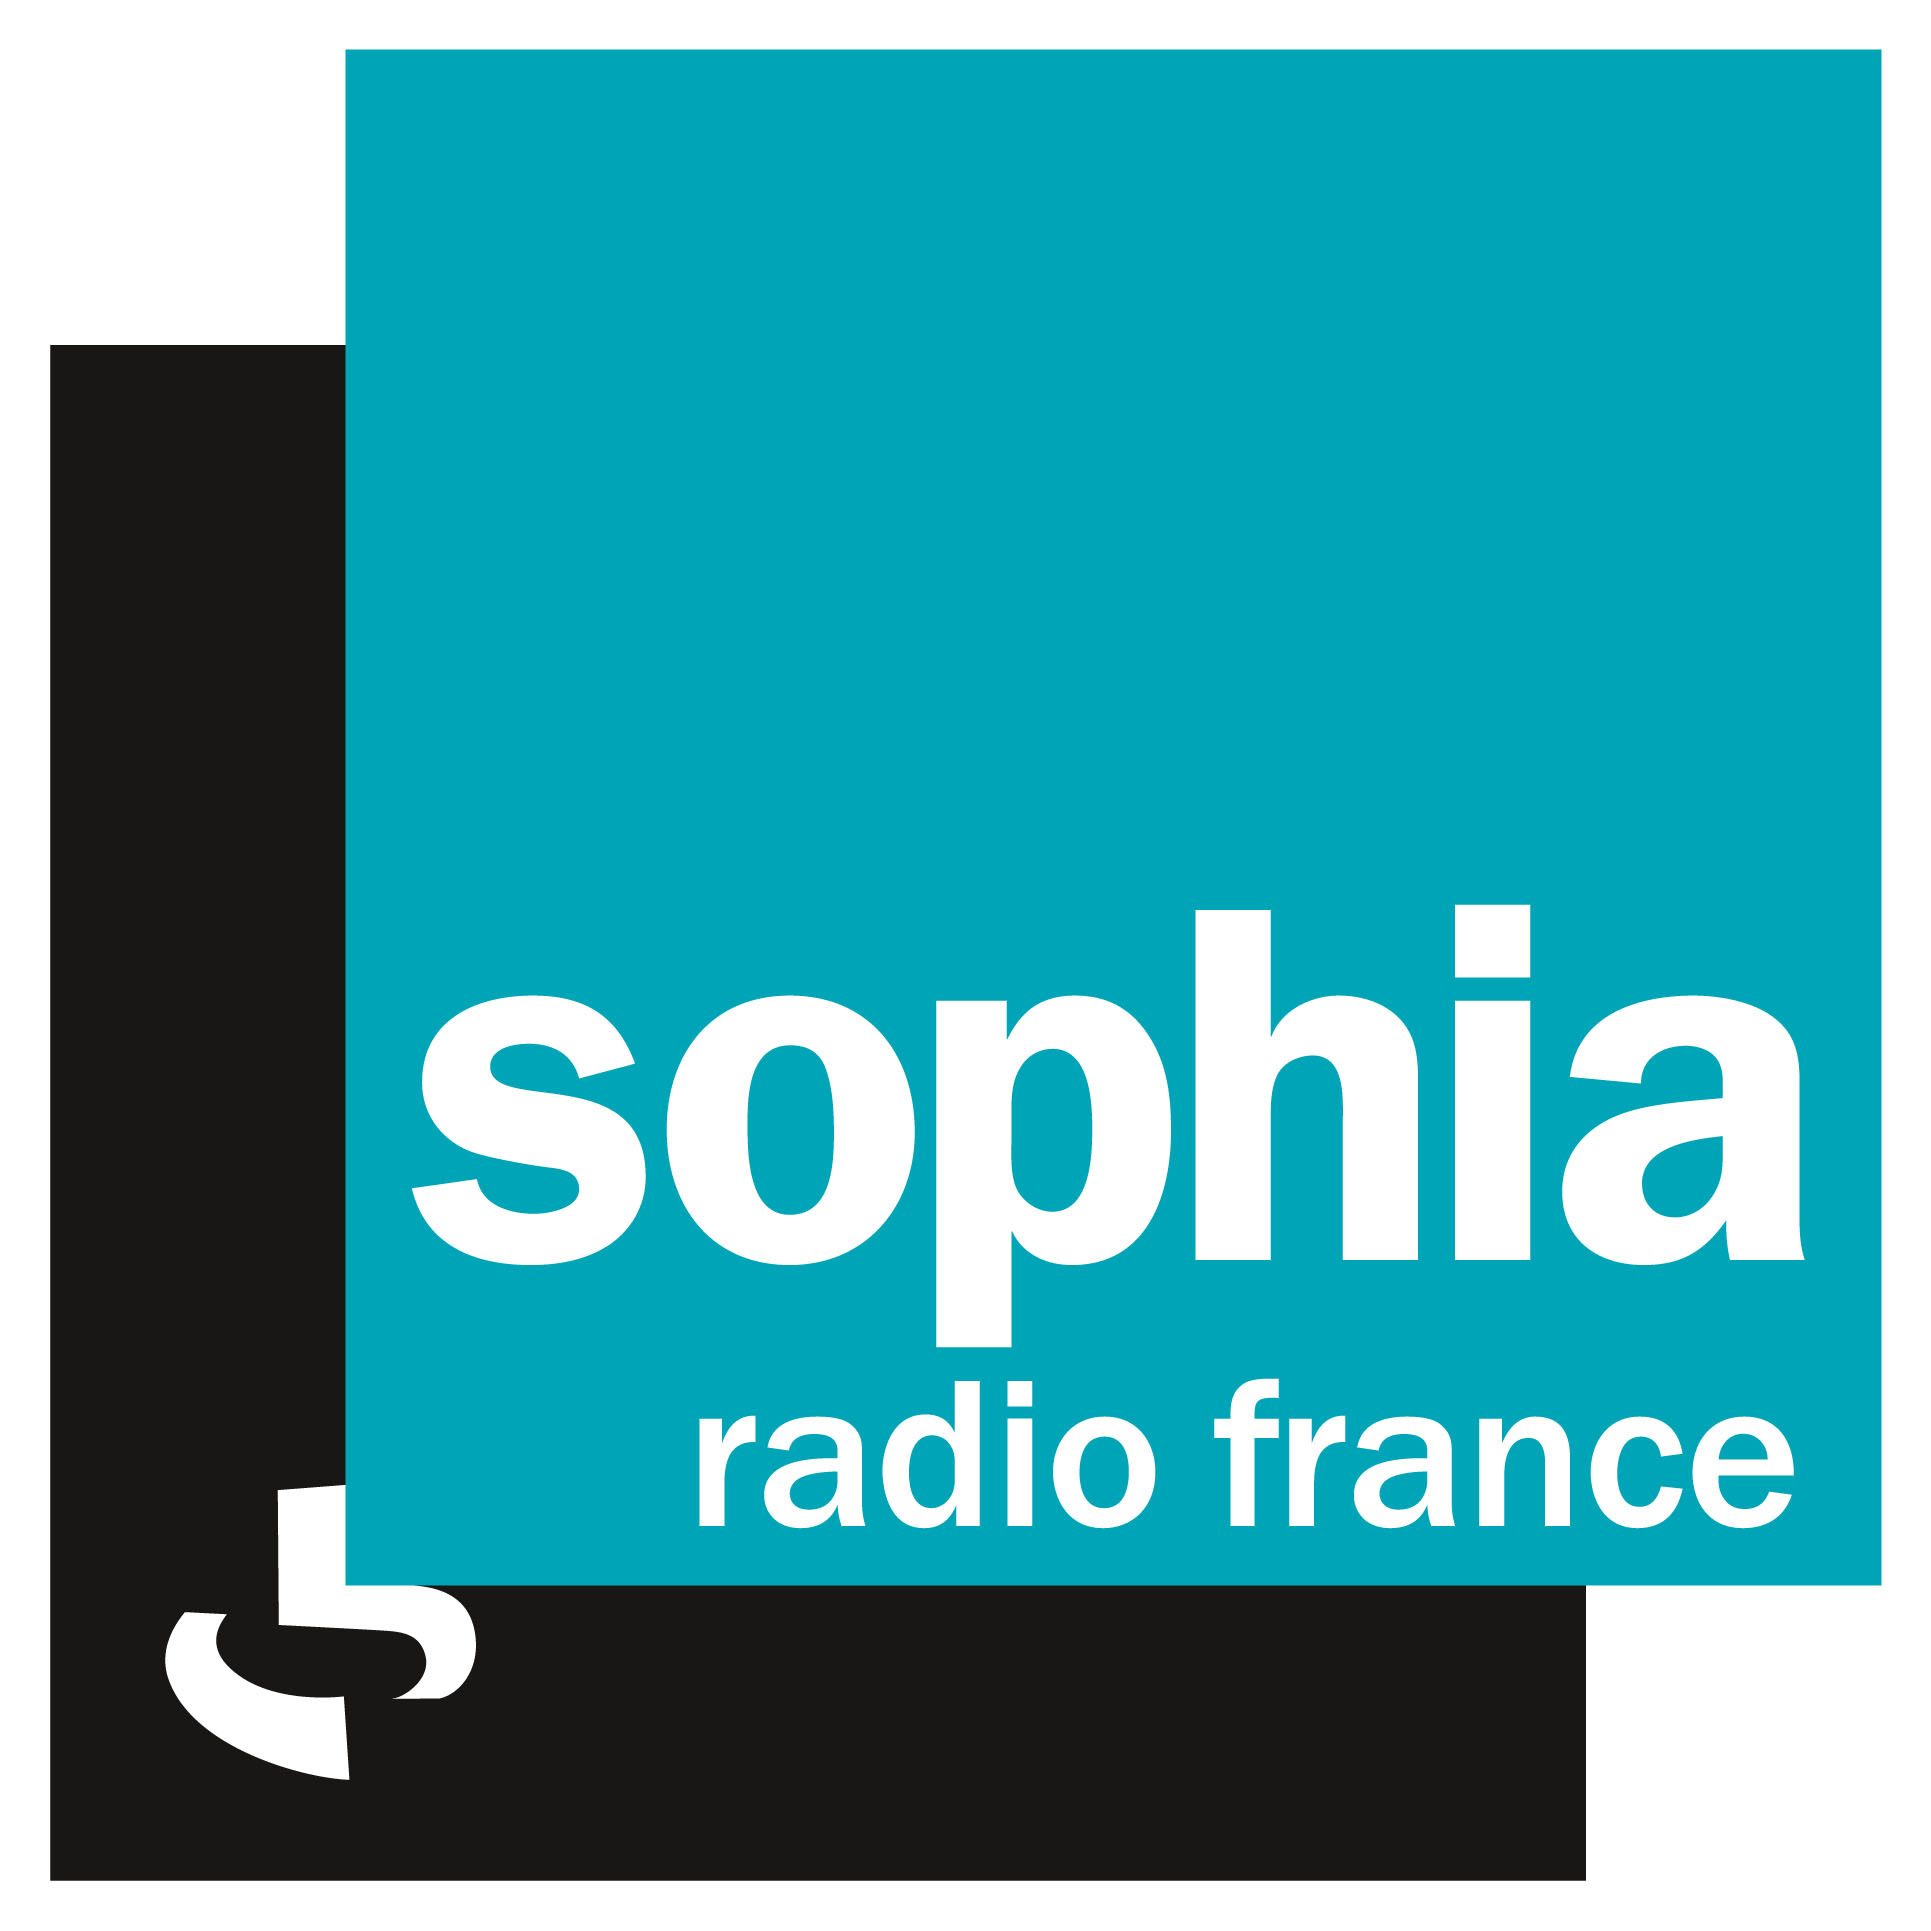 Radio France réfléchit à l'avenir de Sophia